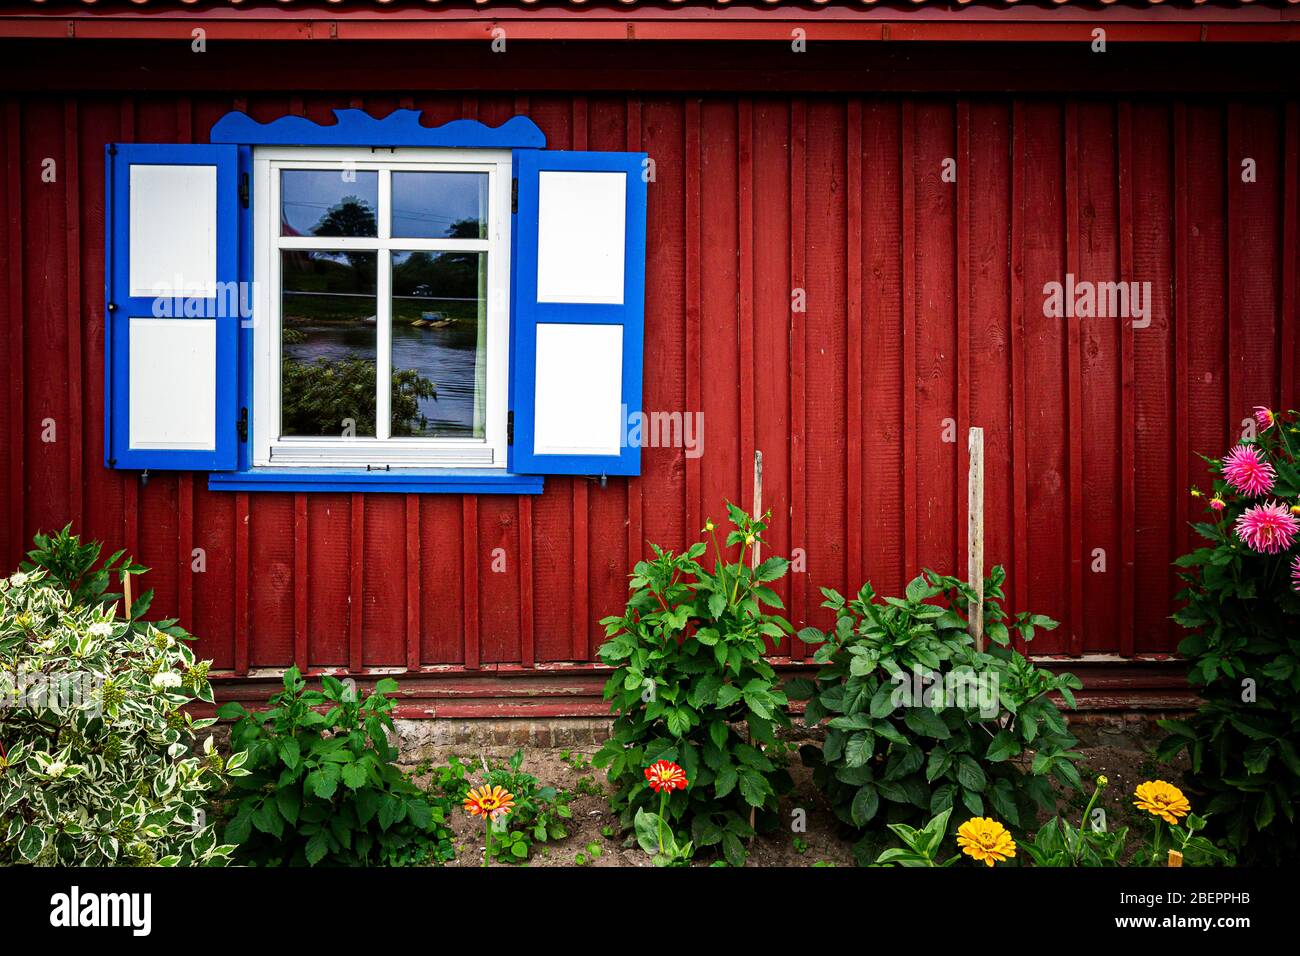 Fenster mit offenen Holzfenstern an einer roten Wand mit Blumengarten darunter Stockfoto